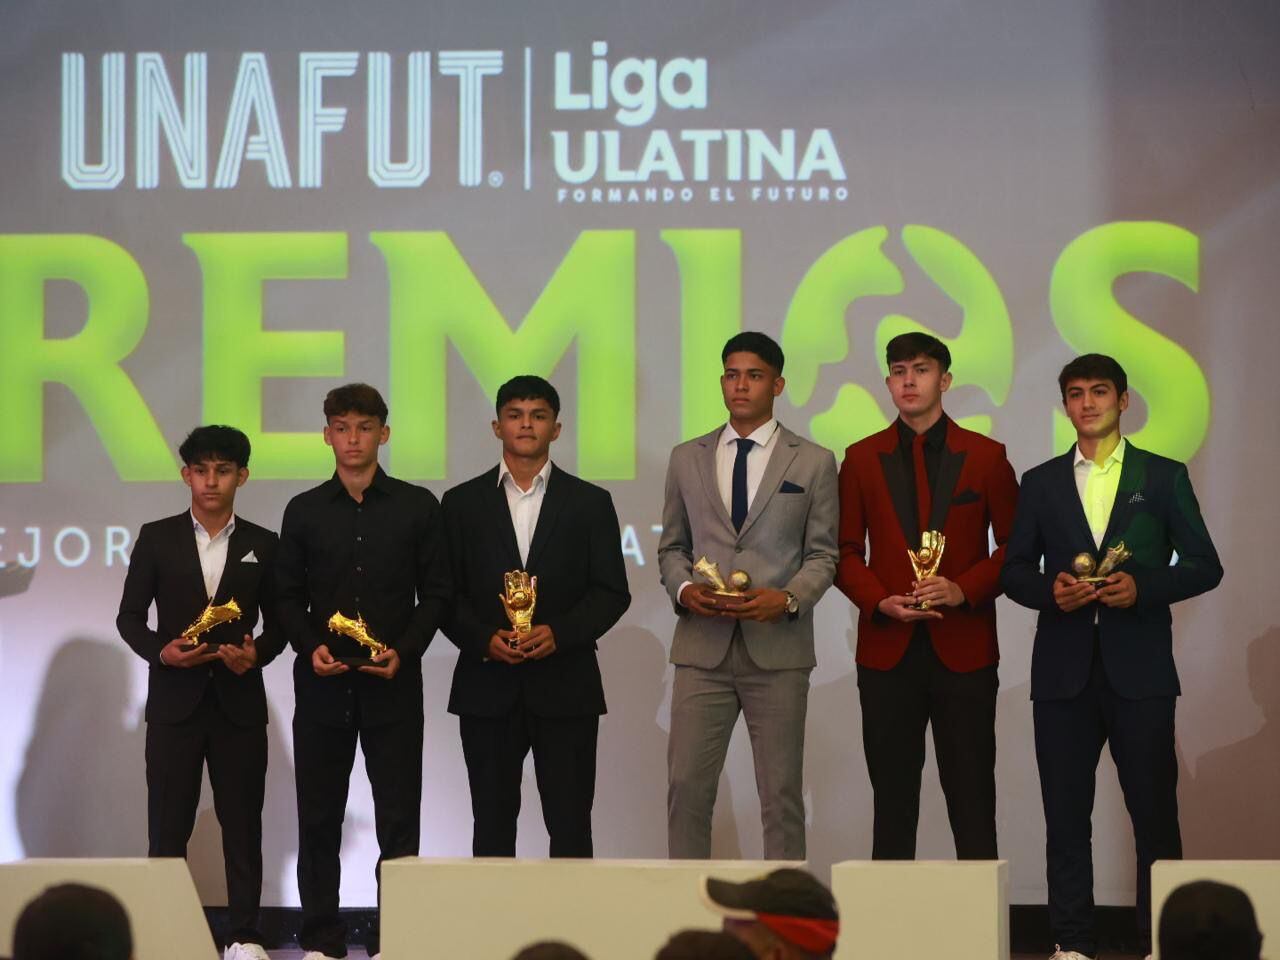 Abdíaz Acosta (Alajuelense), Daniel González (Santos), Eddy Ondoy (Santos), Luis Rodríguez (Alajuelense), Fabián Núñez (Alajuelense) y Andrés Beirute (Alajuelense) fueron los premiados en la U-17.